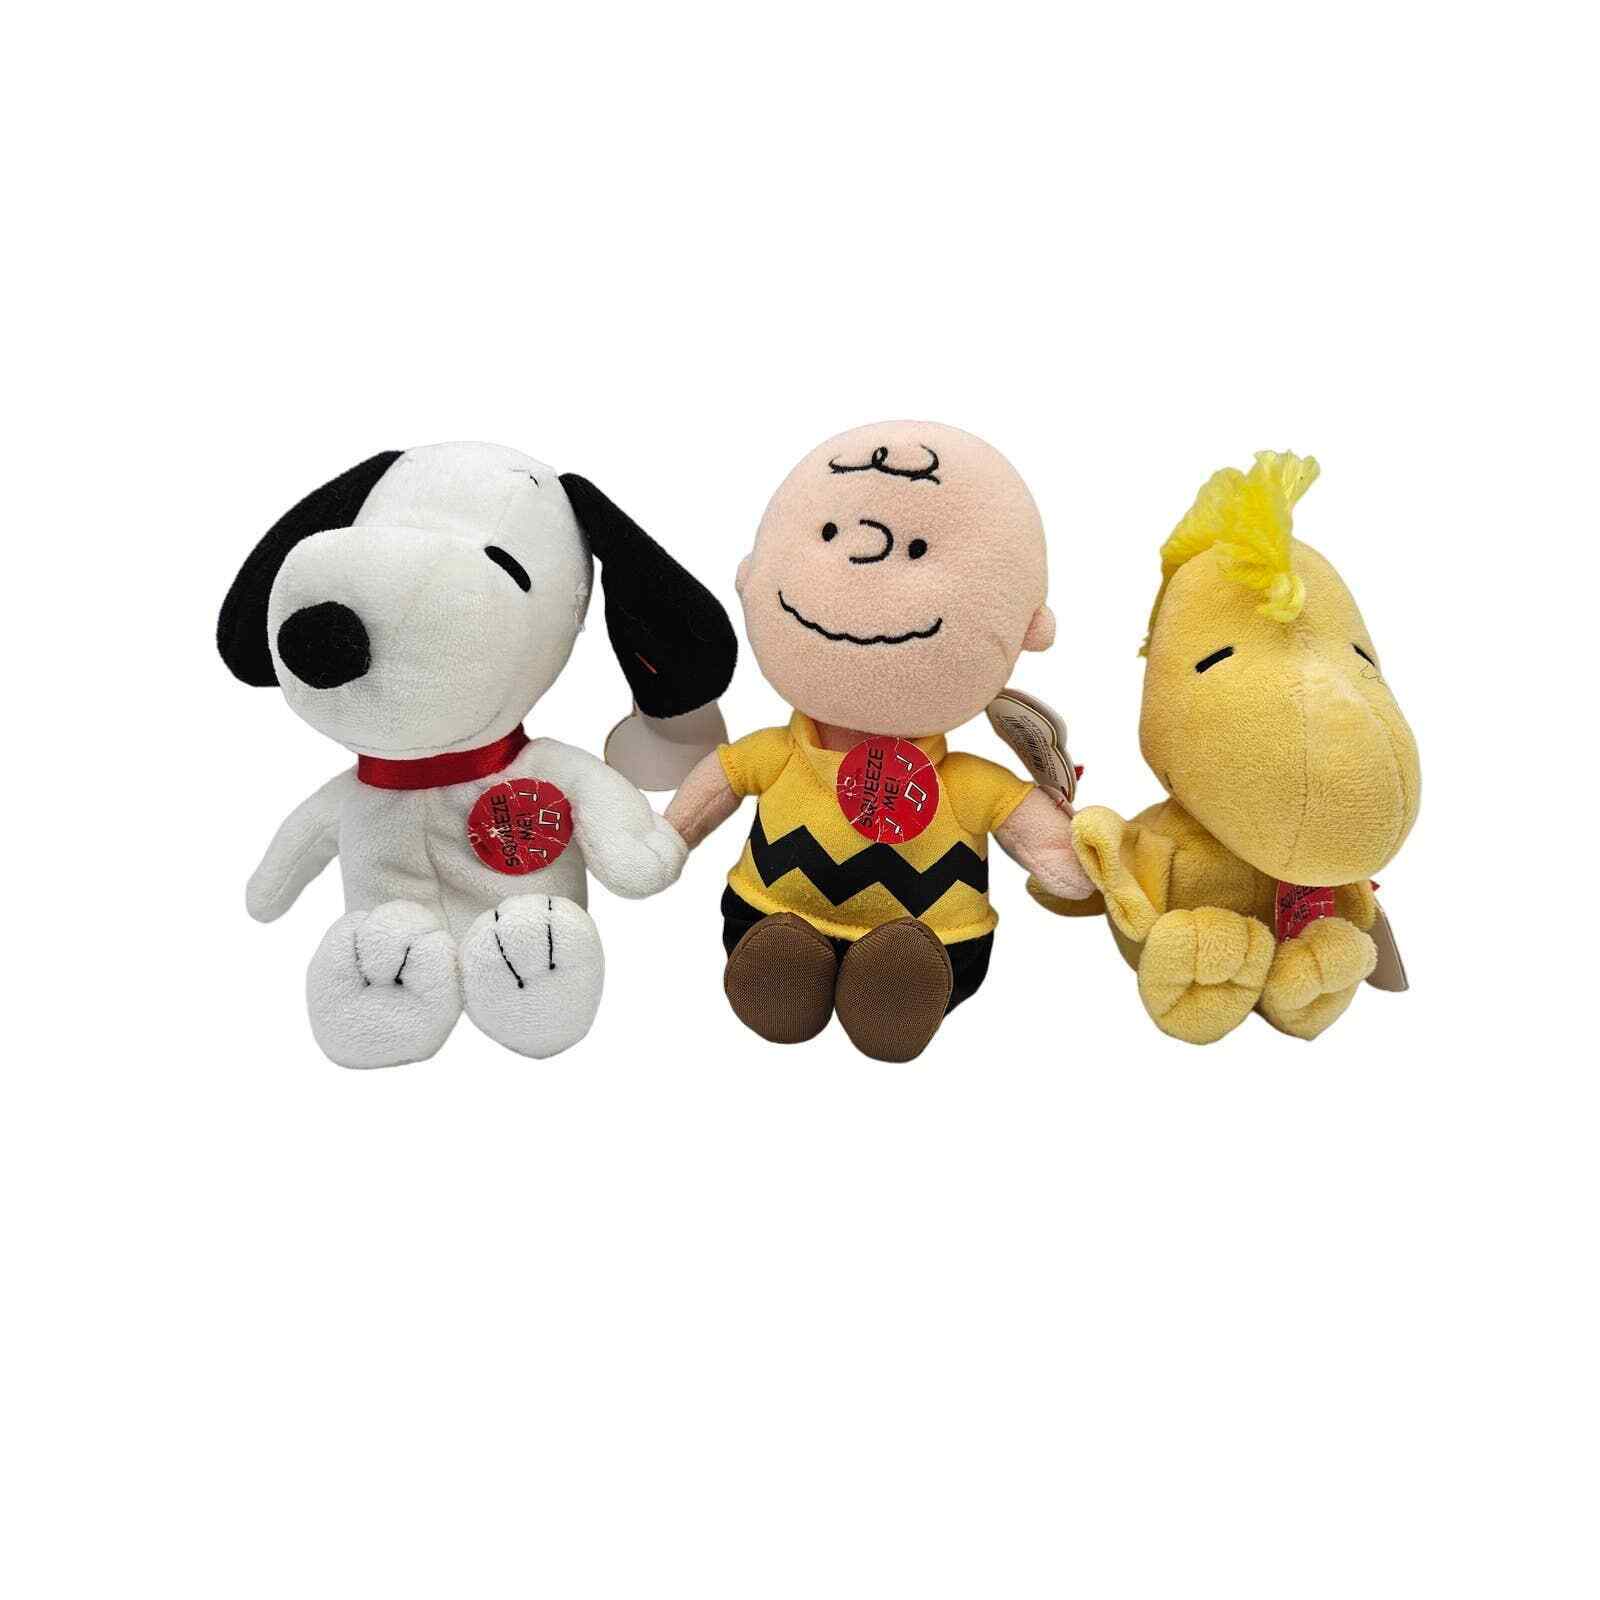 Peanuts Ty Beanie Babies Lot Charlie Brown Snoopy Woodstock Original Tags